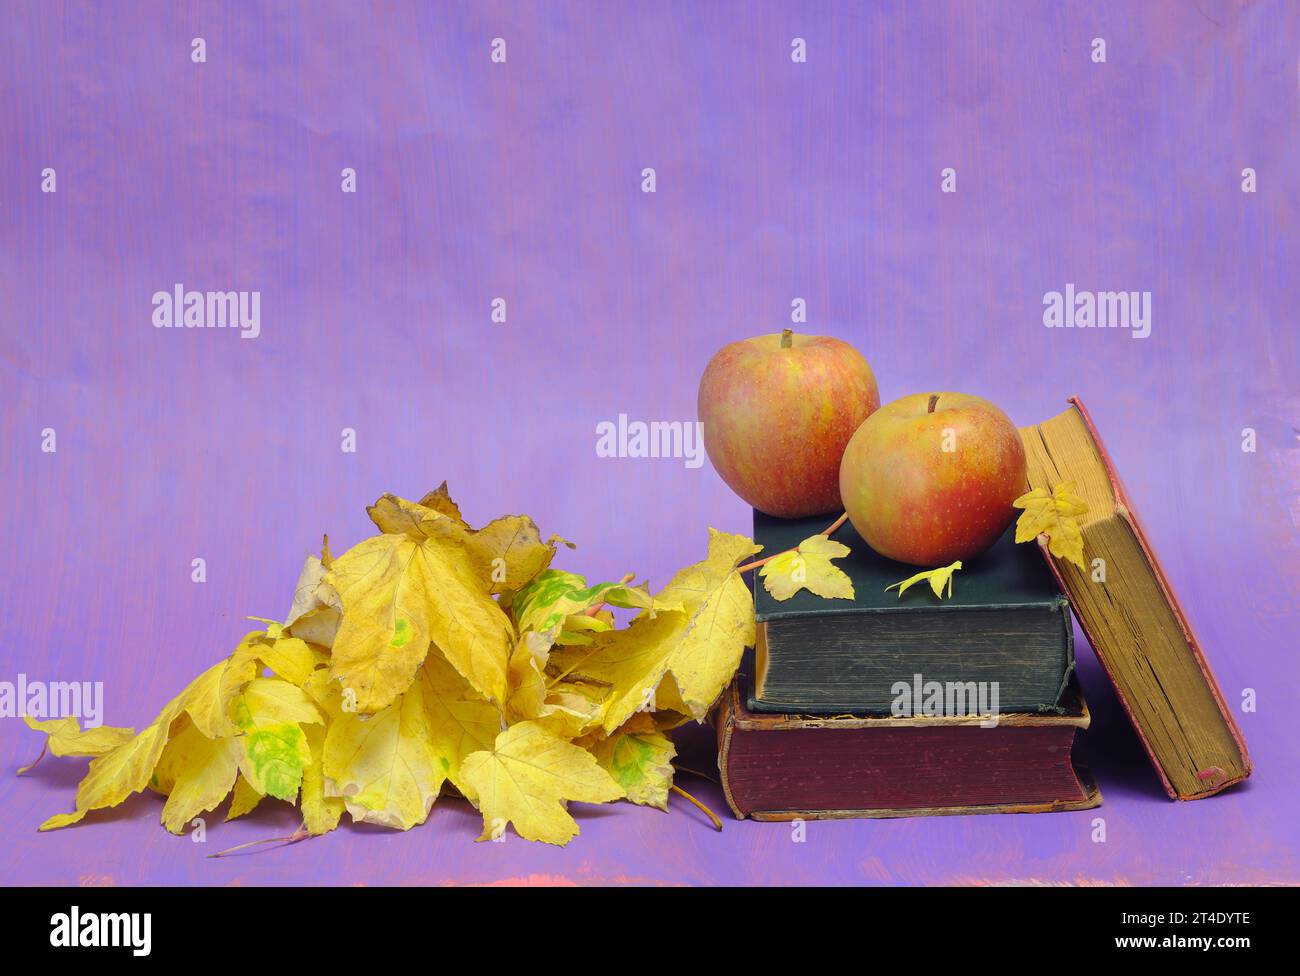 Lesen und Entspannen im Herbst mit Büchern, Äpfeln und Herbstlaub. Herbstbuchmesse, Inspiration, Lesen, Bildung, Literaturkonzept, kostenlose Kopie sp Stockfoto